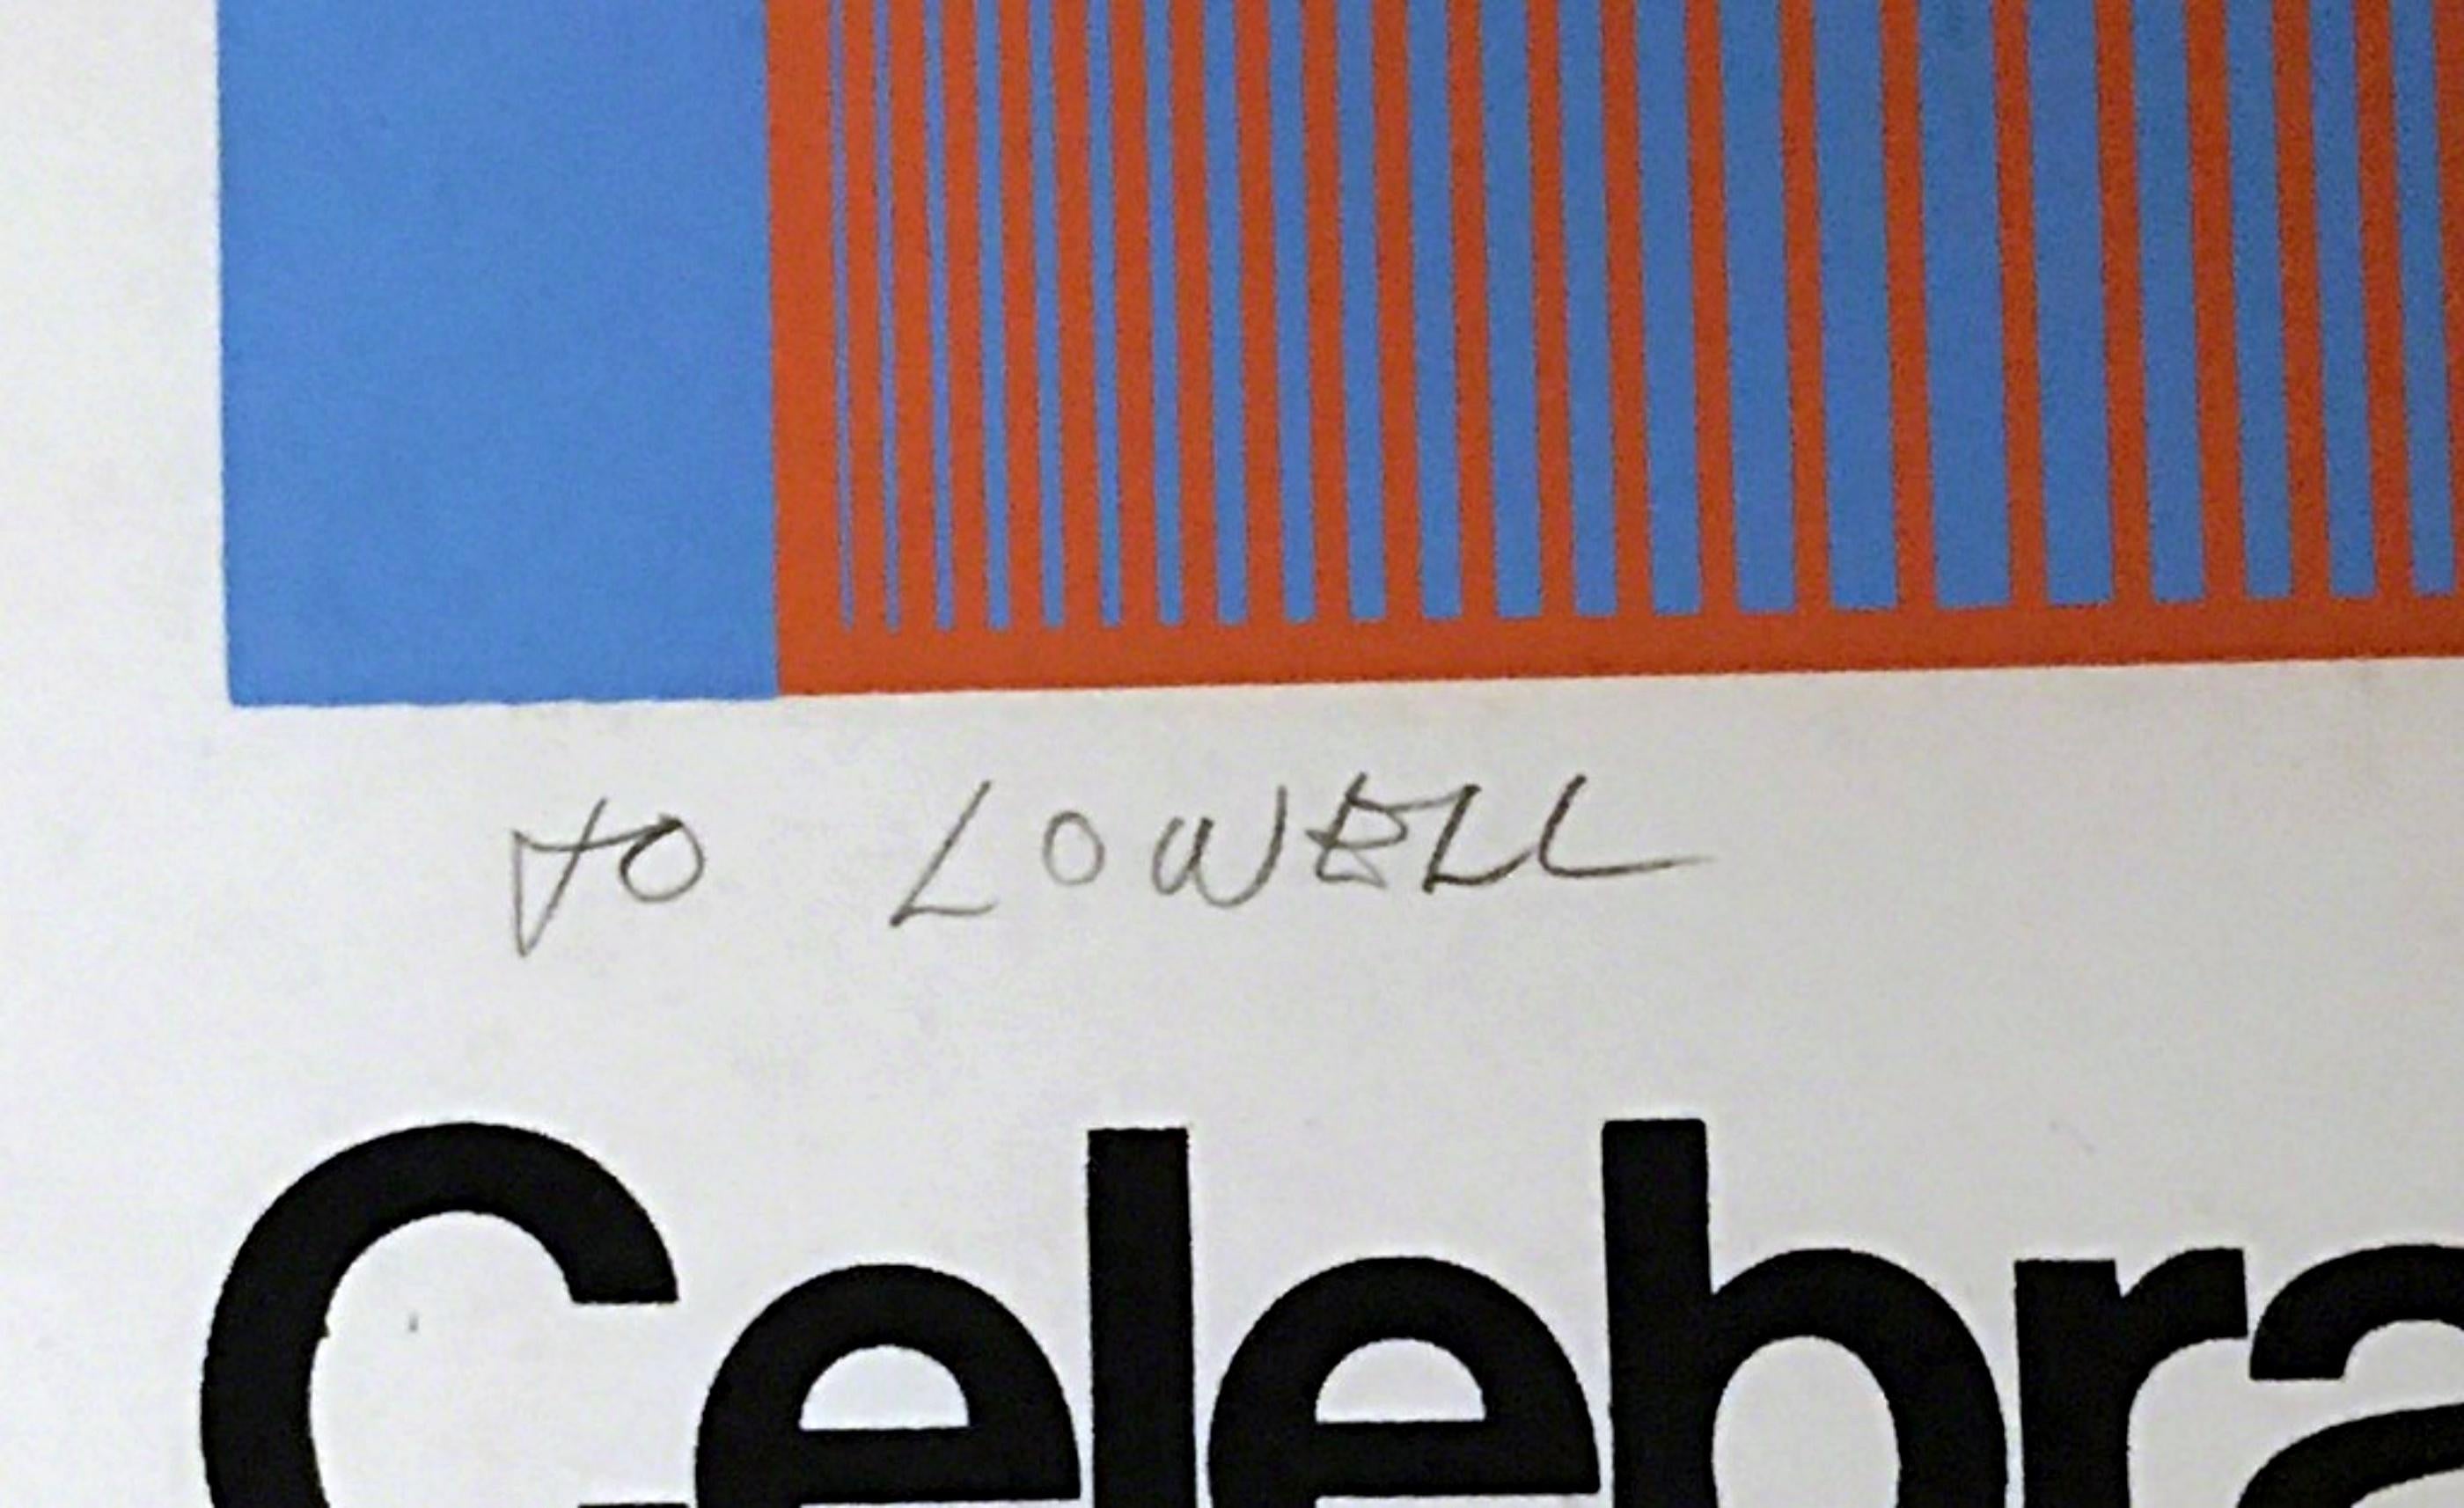 Richard Anuszkiewicz
Celebrate New York (handsigniertes Poster in limitierter Auflage), 1974
Siebdruck auf Velinpapier
Vom Künstler handsigniert, auf der Vorderseite signiert, datiert und beschriftet 